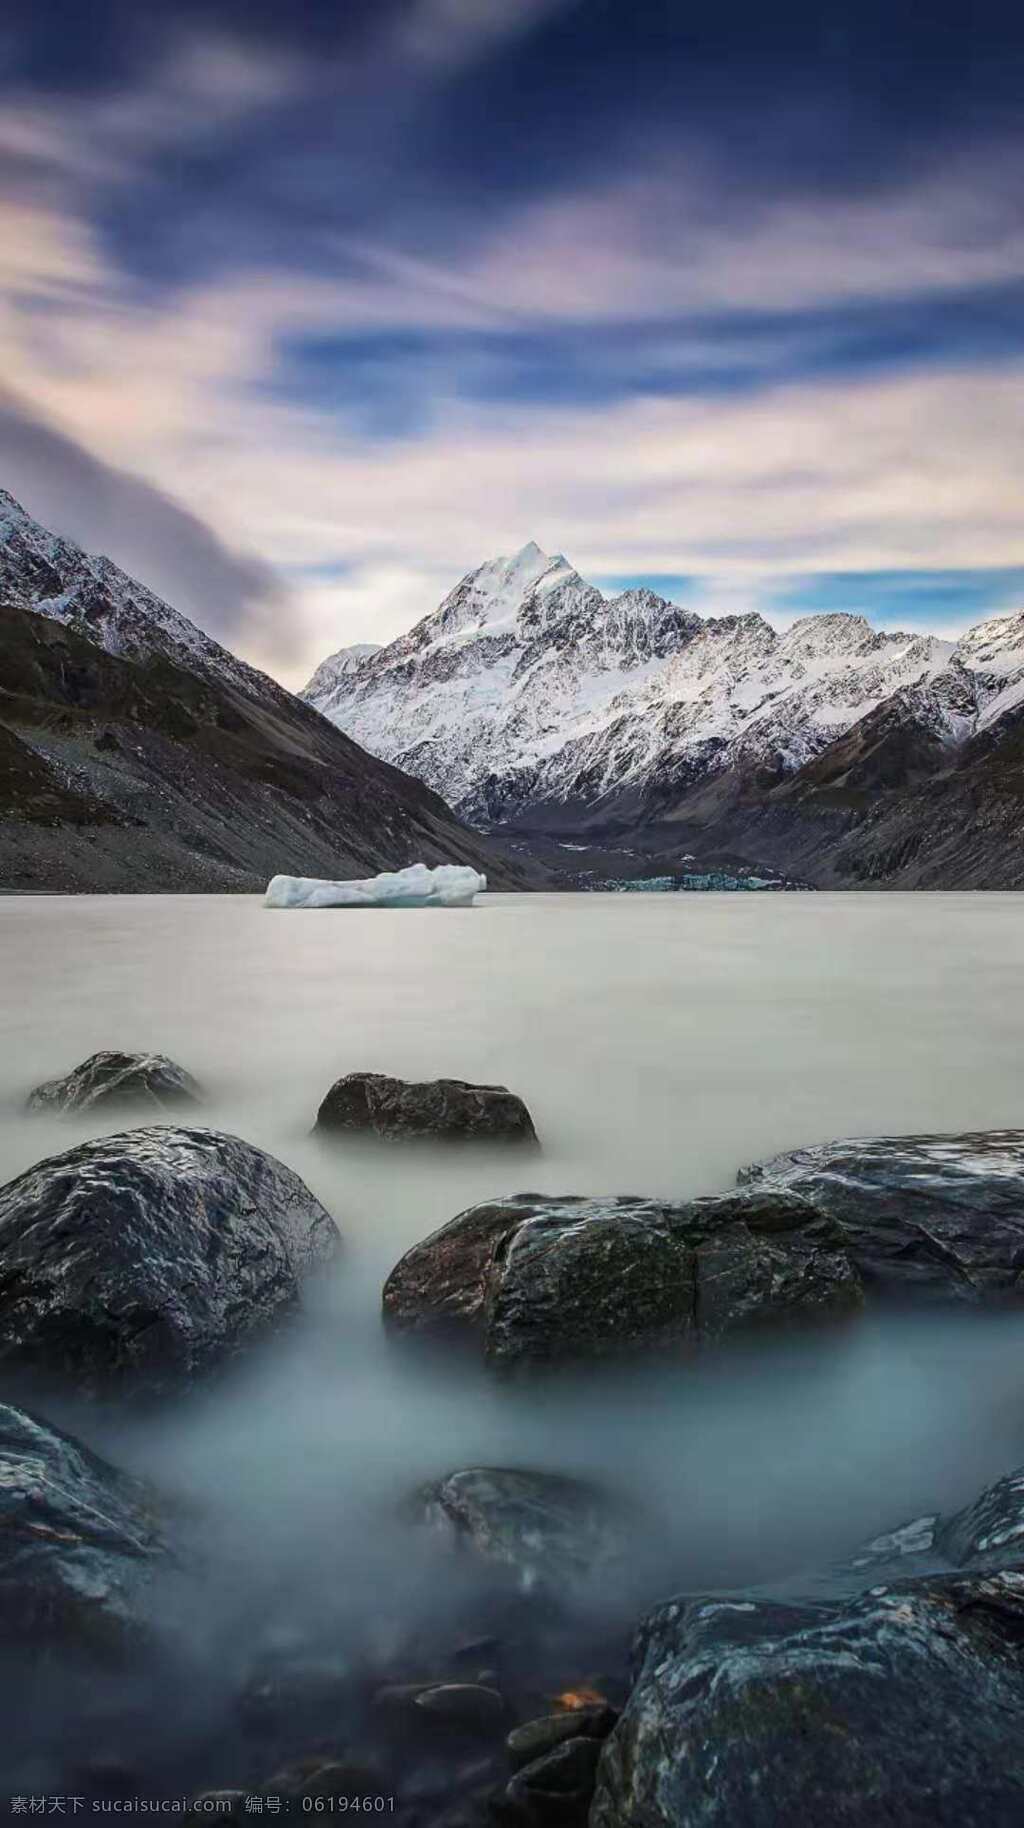 雪白的山脉 冰川湖 寒冷的山脉 寒冷的湖泊 外国山脉 外国湖泊 山脉拍摄 湖泊拍摄 自然景观 自然风景